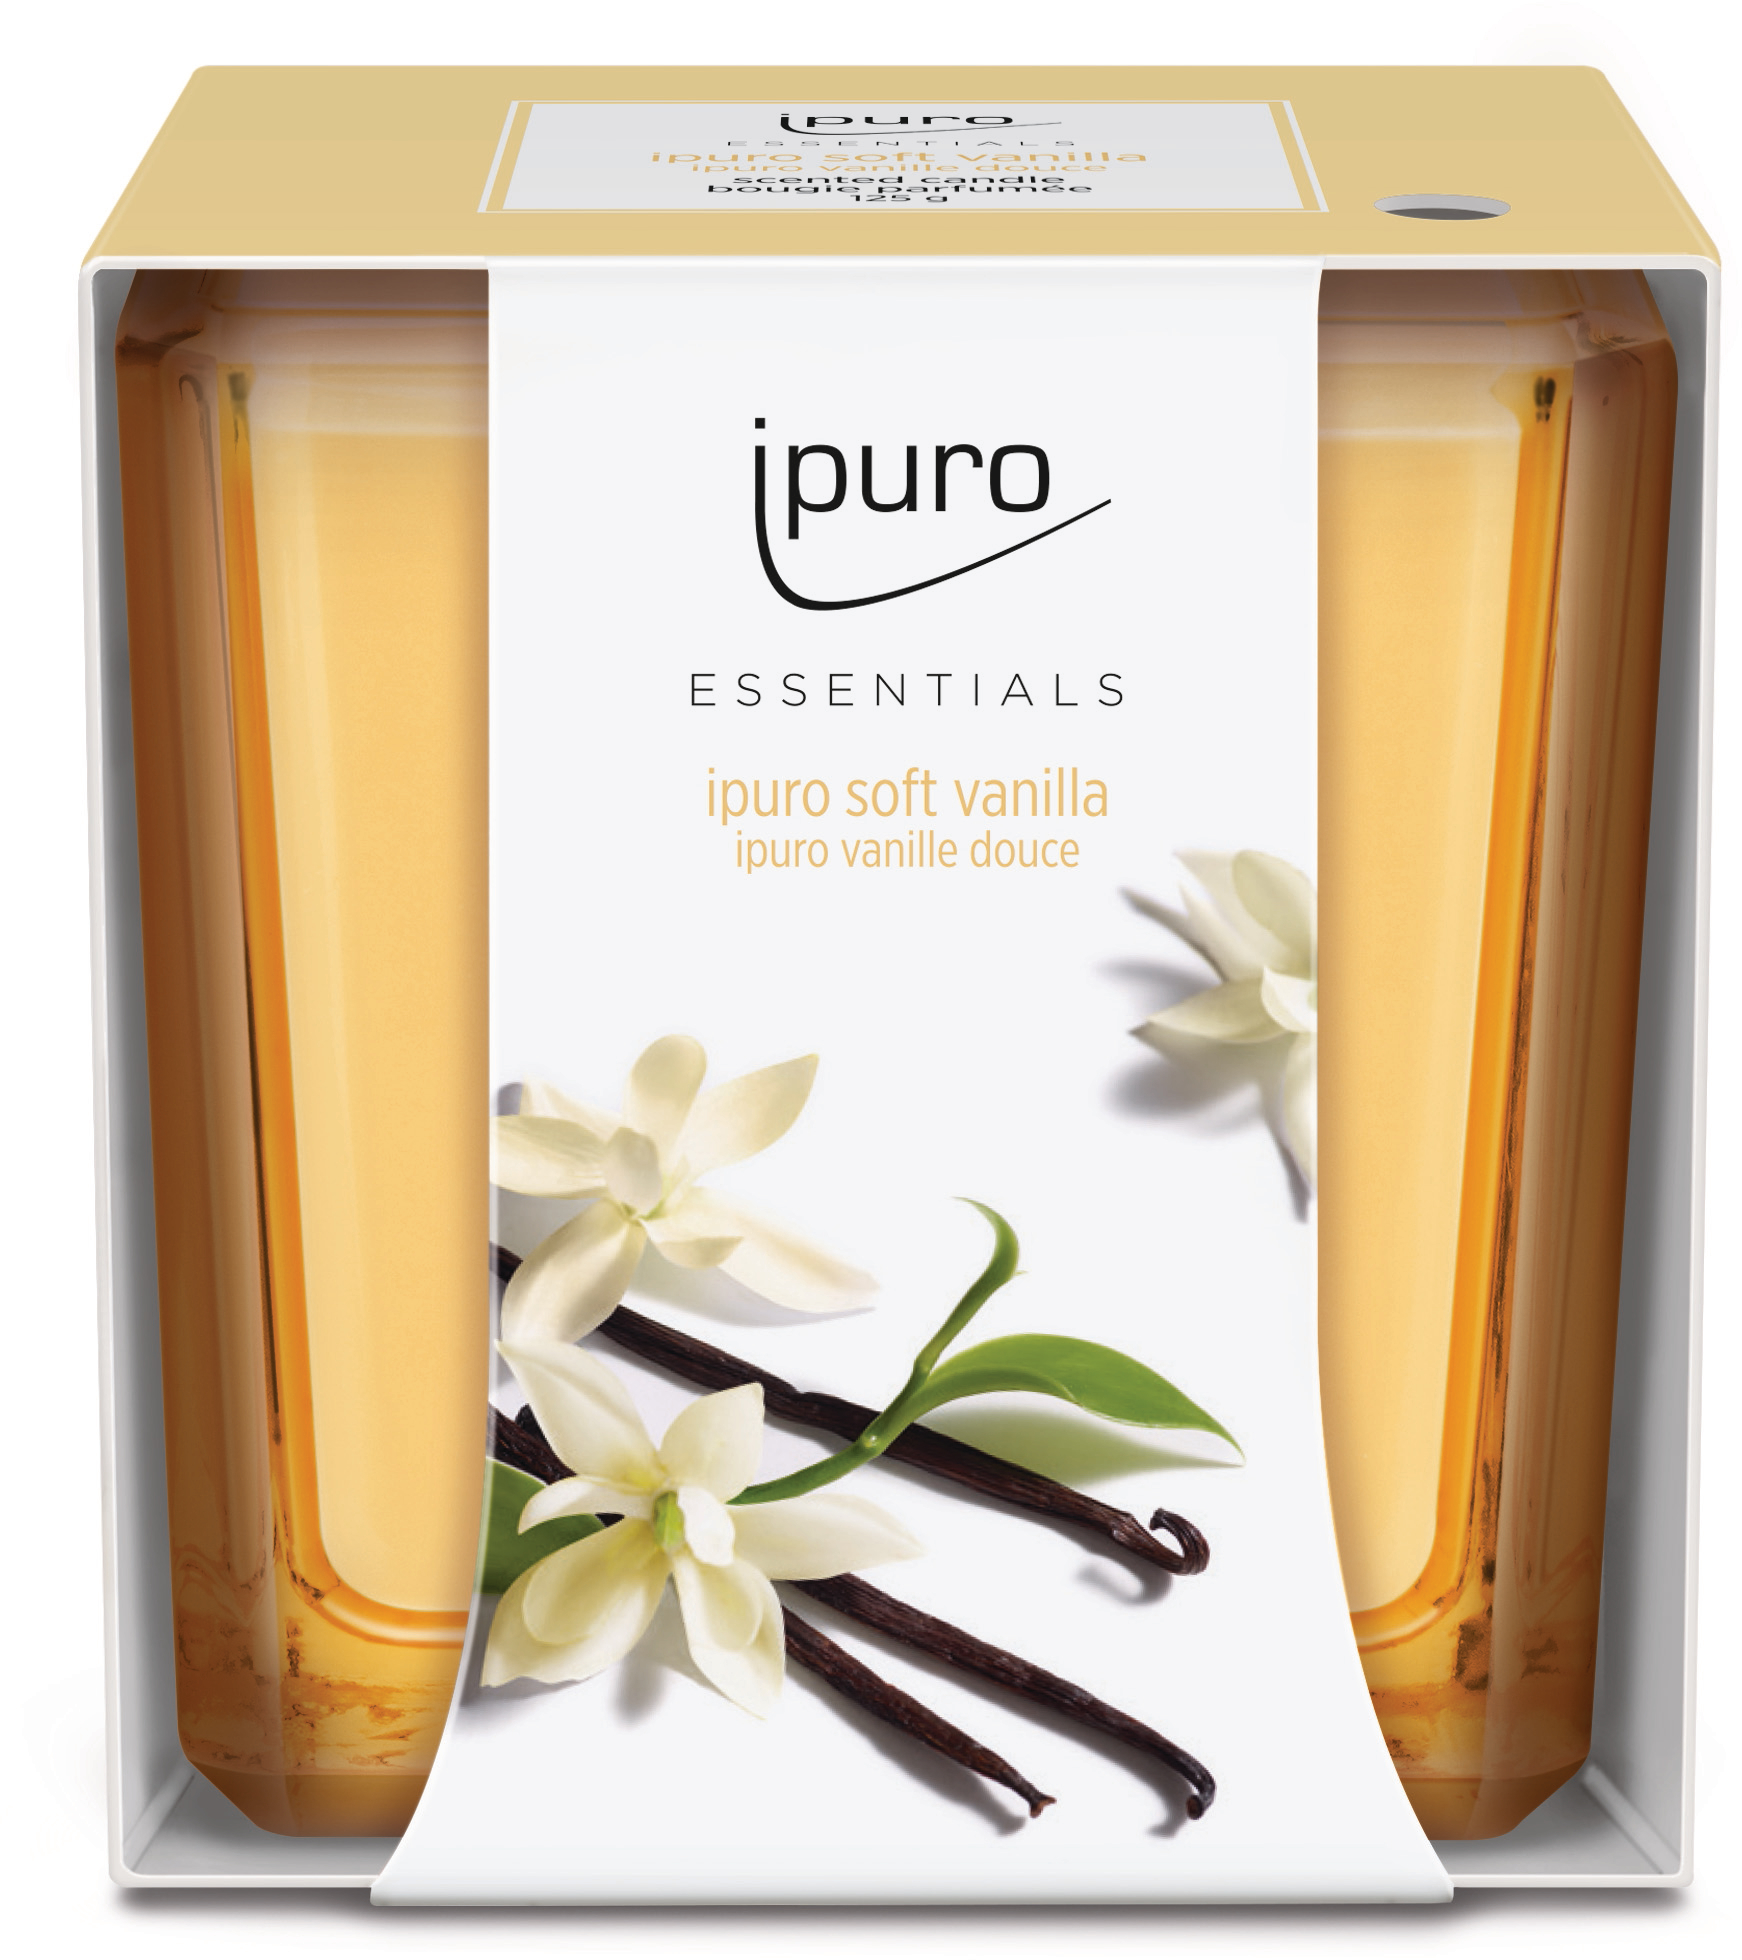 IPURO Bougie parfumée Essentials 051.1207 soft vanilla 125g soft vanilla 125g